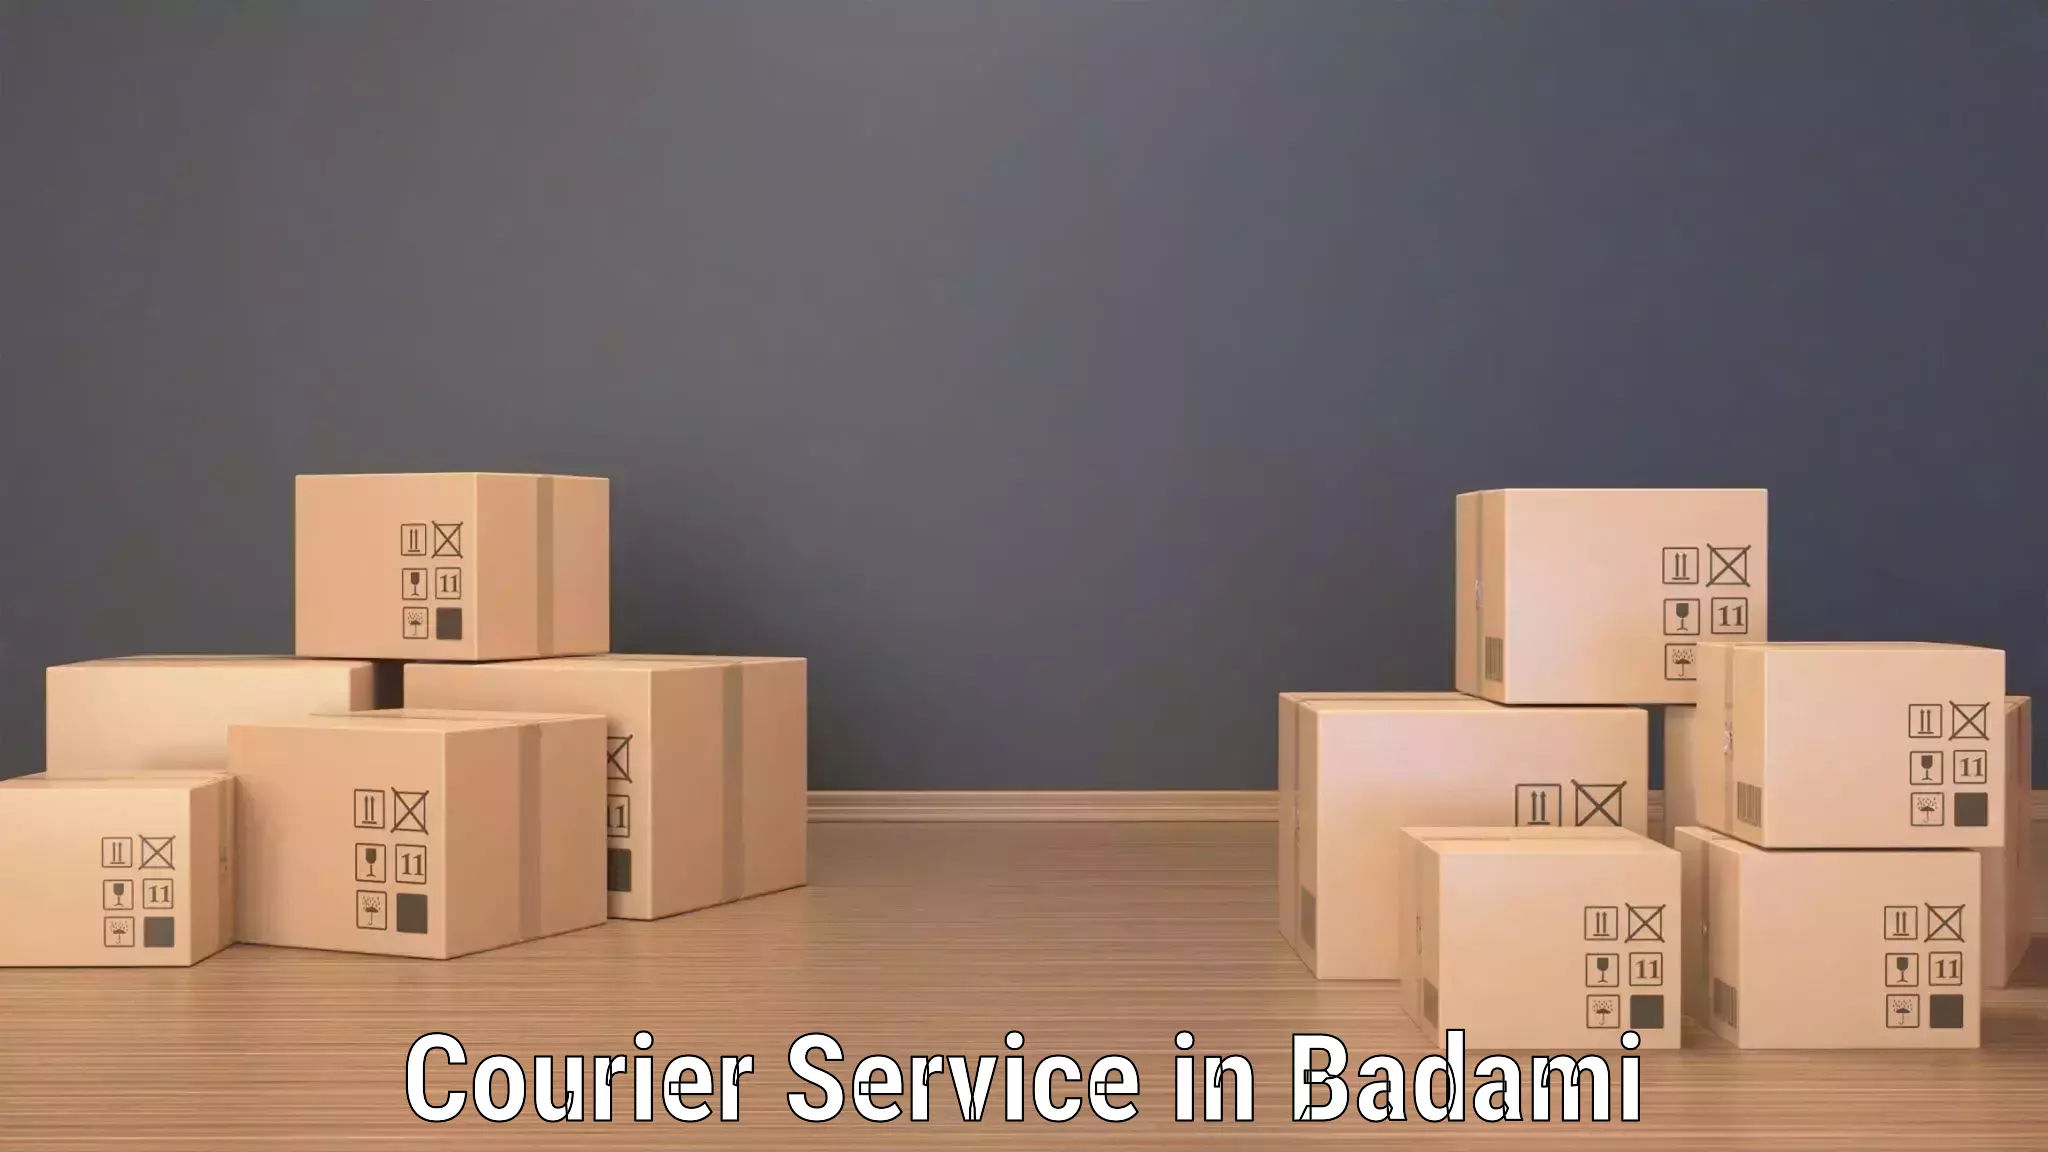 Logistics solutions in Badami